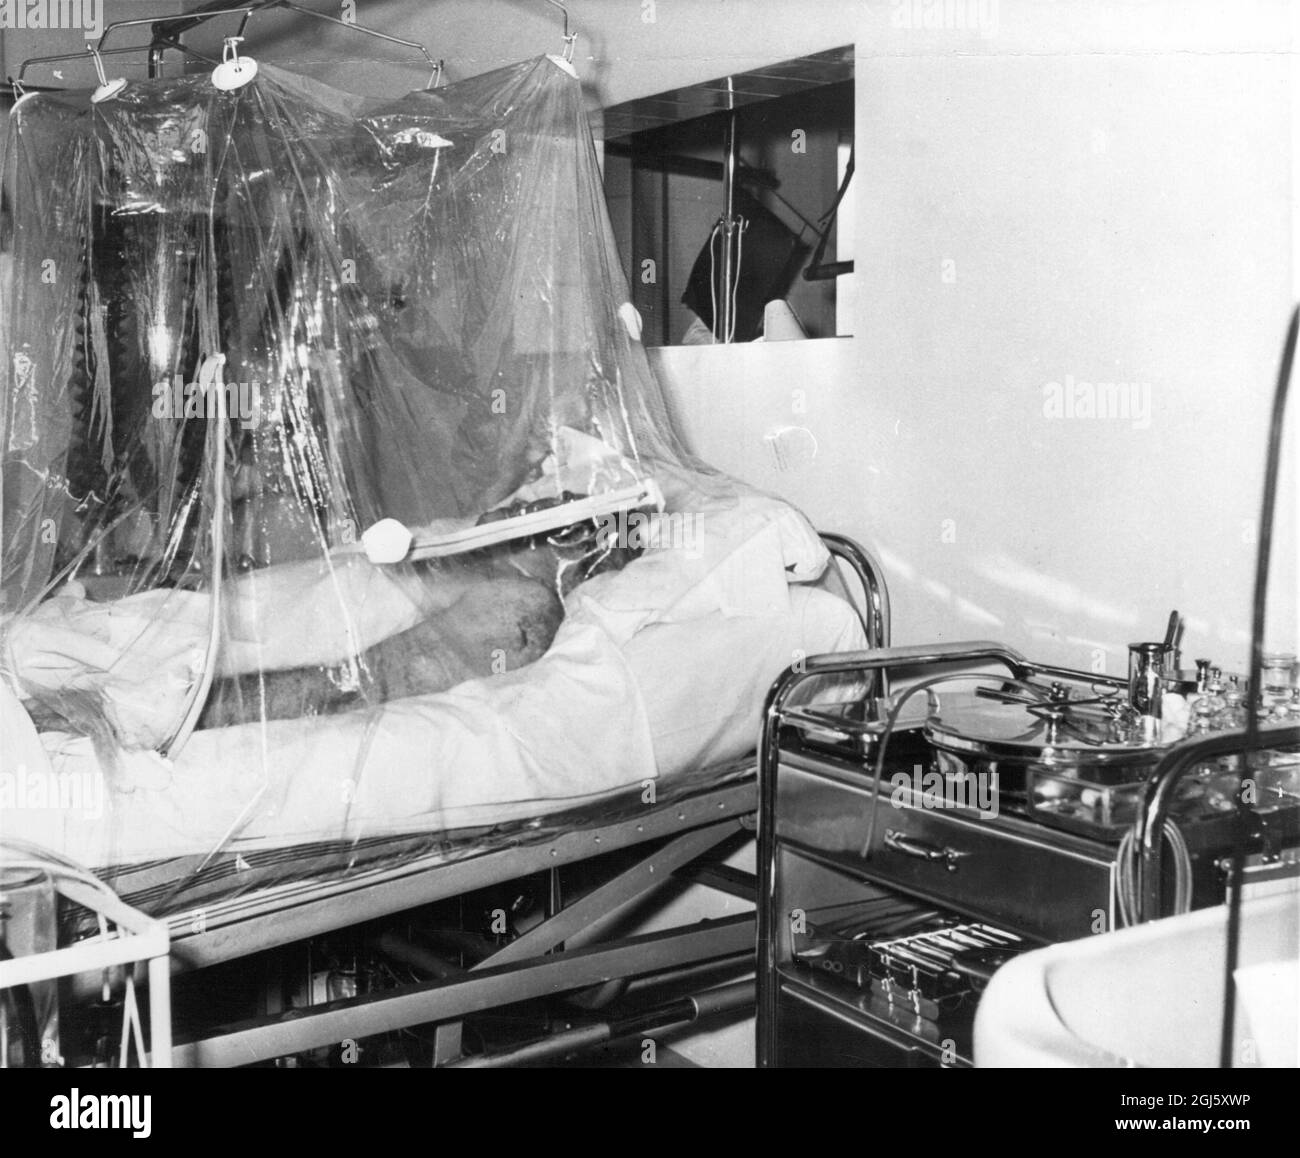 Herr Busby wurde jetzt von der Gefahrliste entfernt. Manchester United Manager Matt Busby in seinem Sauerstoffzelt in einem Münchner Krankenhaus, wo er nach einem Flugzeugabsturz, der acht seiner Teammitglieder das Leben kostete, langsam Fortschritte macht. Februar 1958 Stockfoto